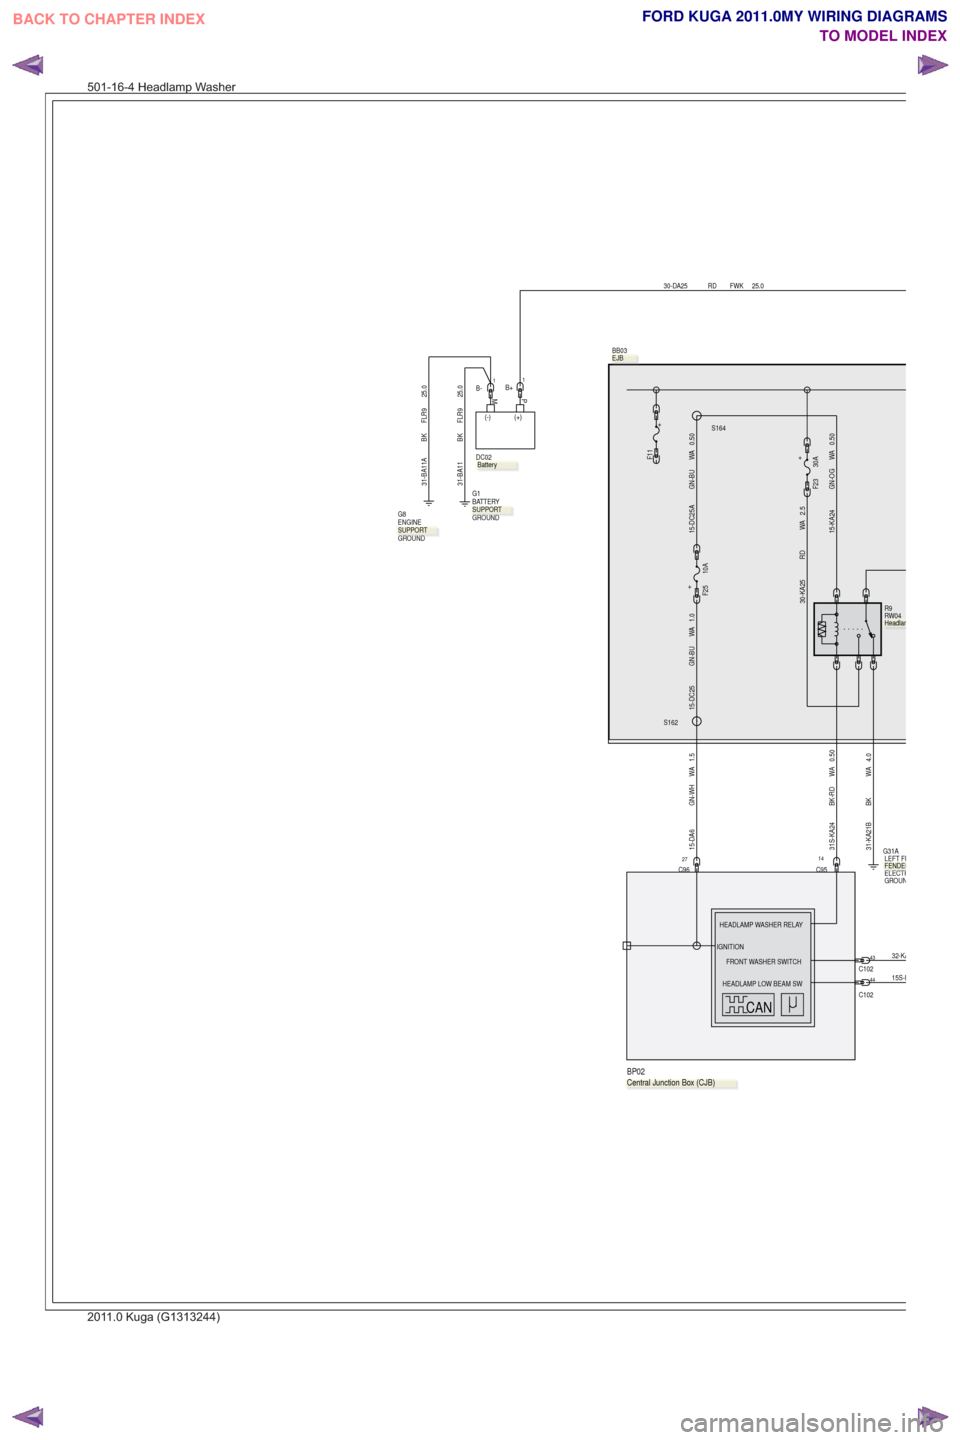 FORD KUGA 2011 1.G Wiring Diagram Manual PDF .
R9
RW04
0.50
WA
BK-RD
31S-KA24
BB03
30-DA25 RD FWK 25.0
14C95
+
F23 30A
C1024332-KA
15S-L
C102
44
2.5
WA
RD
30-KA25
PM
(+)
(-)
.
DC02
1B+
HEADLAMP WASHER RELAY
HEADLAMP LOW BEAM SW
FRONT WASHER SWIT